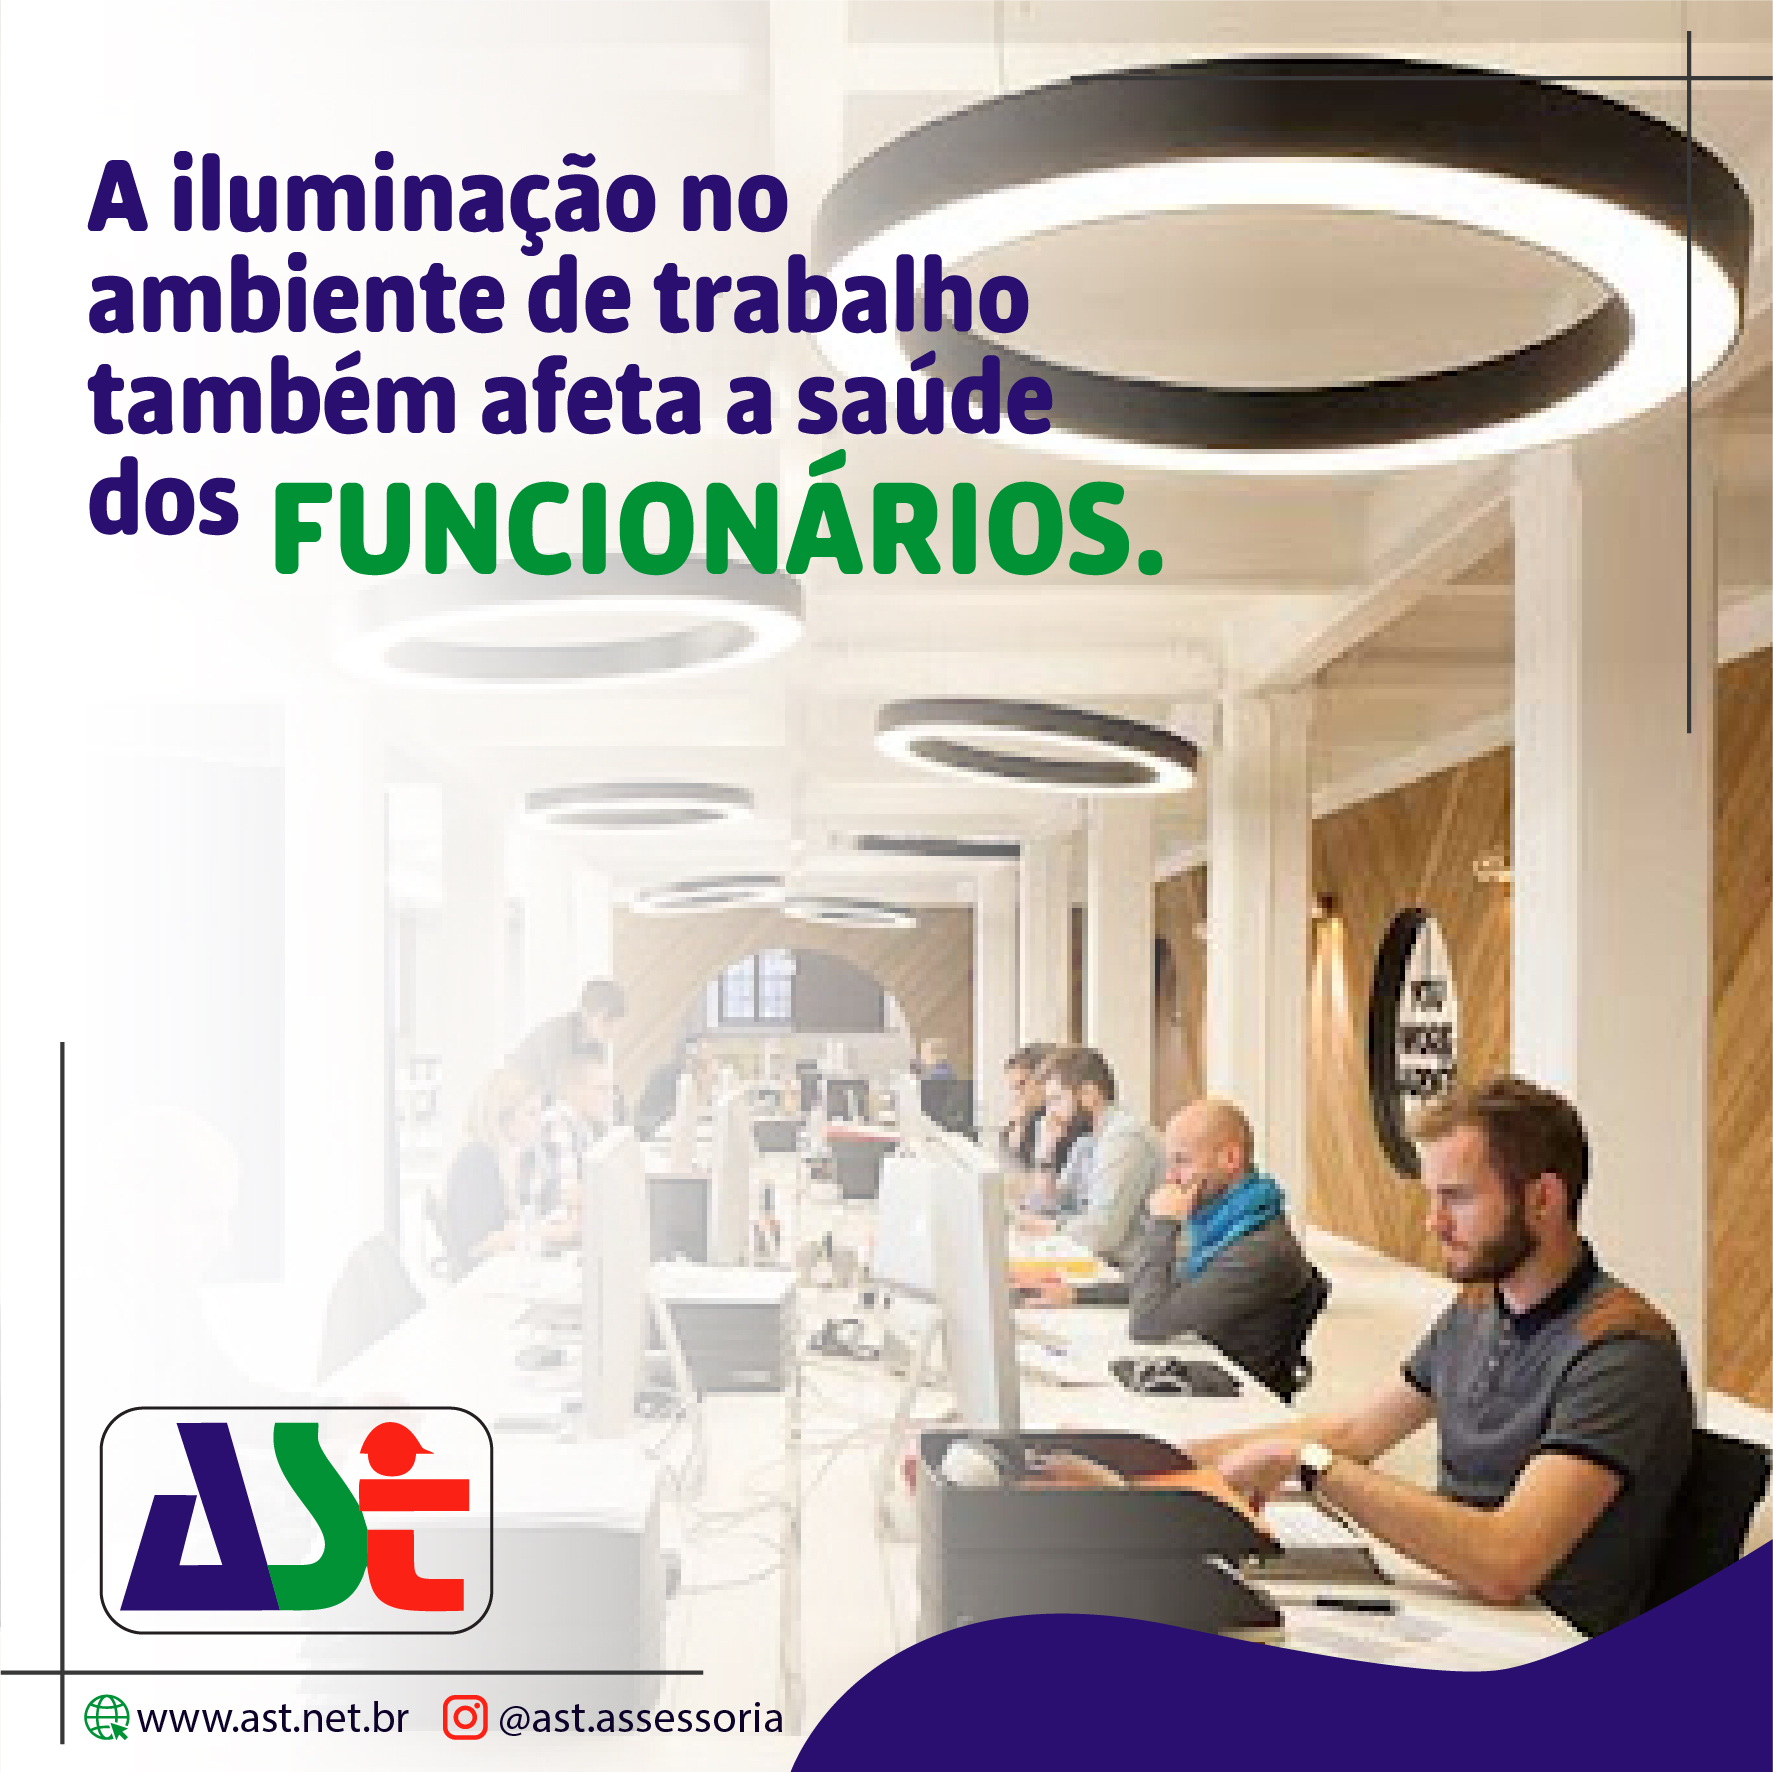 A iluminação no ambiente de trabalho também afeta a saúde dos funcionários.